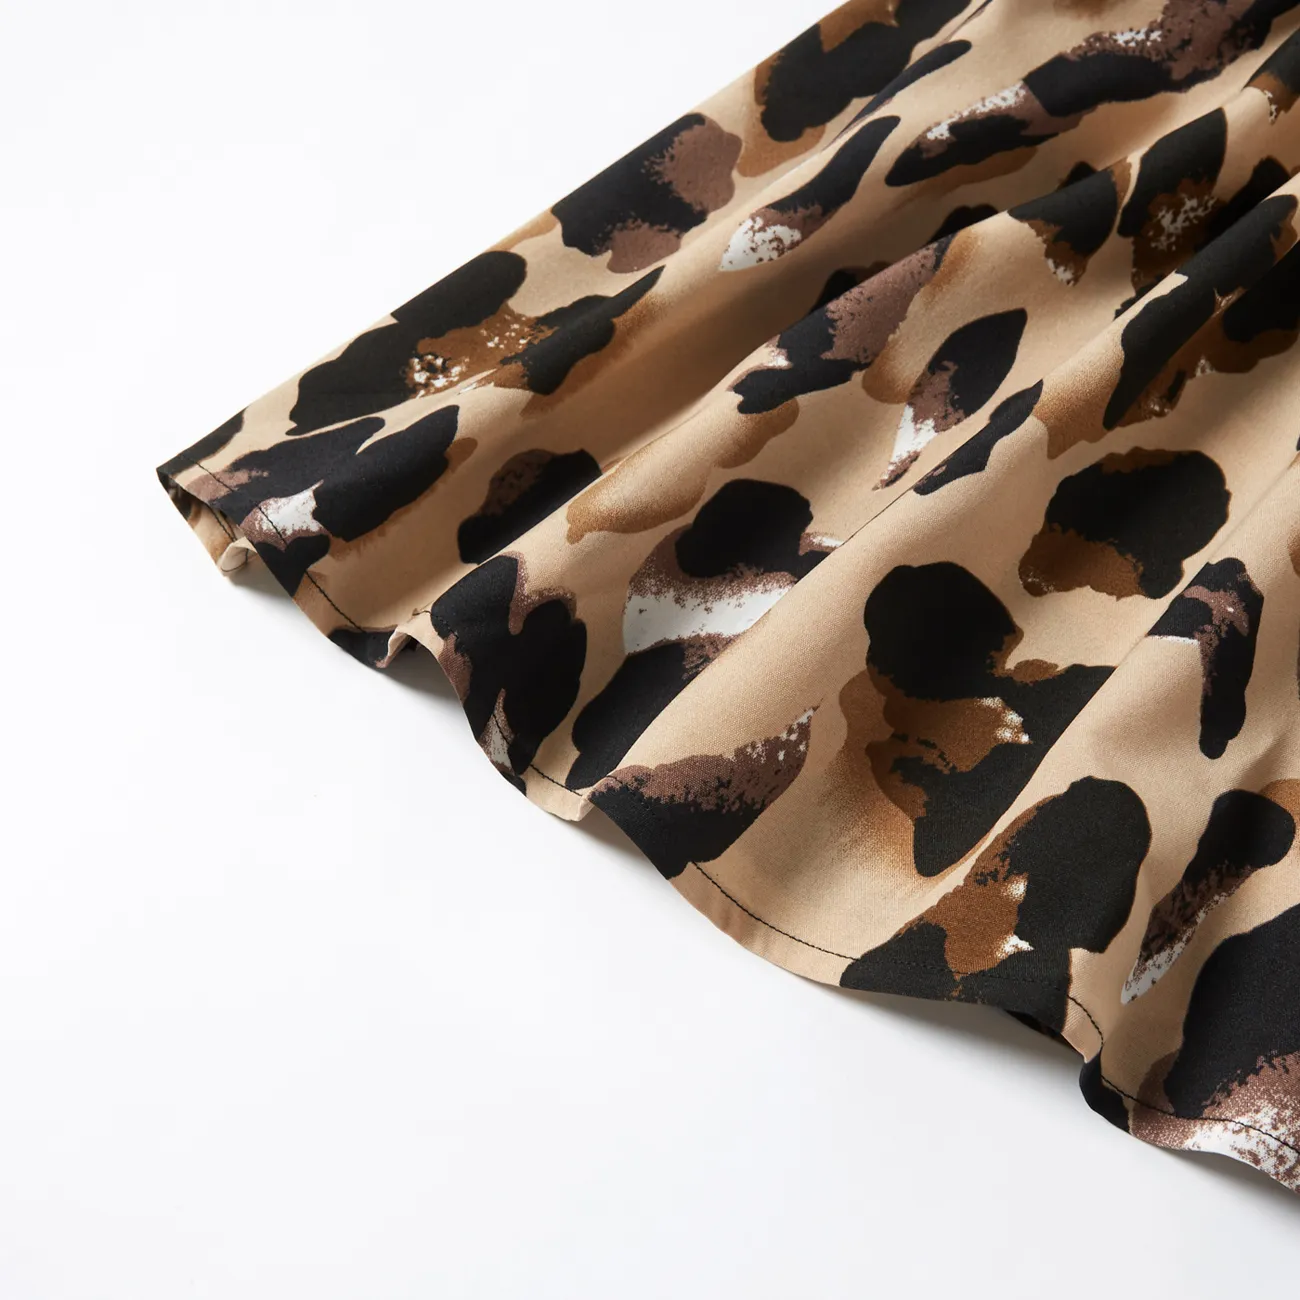 Leopard Print Splice Black Sling Dresses for Mommy and Me Black big image 1